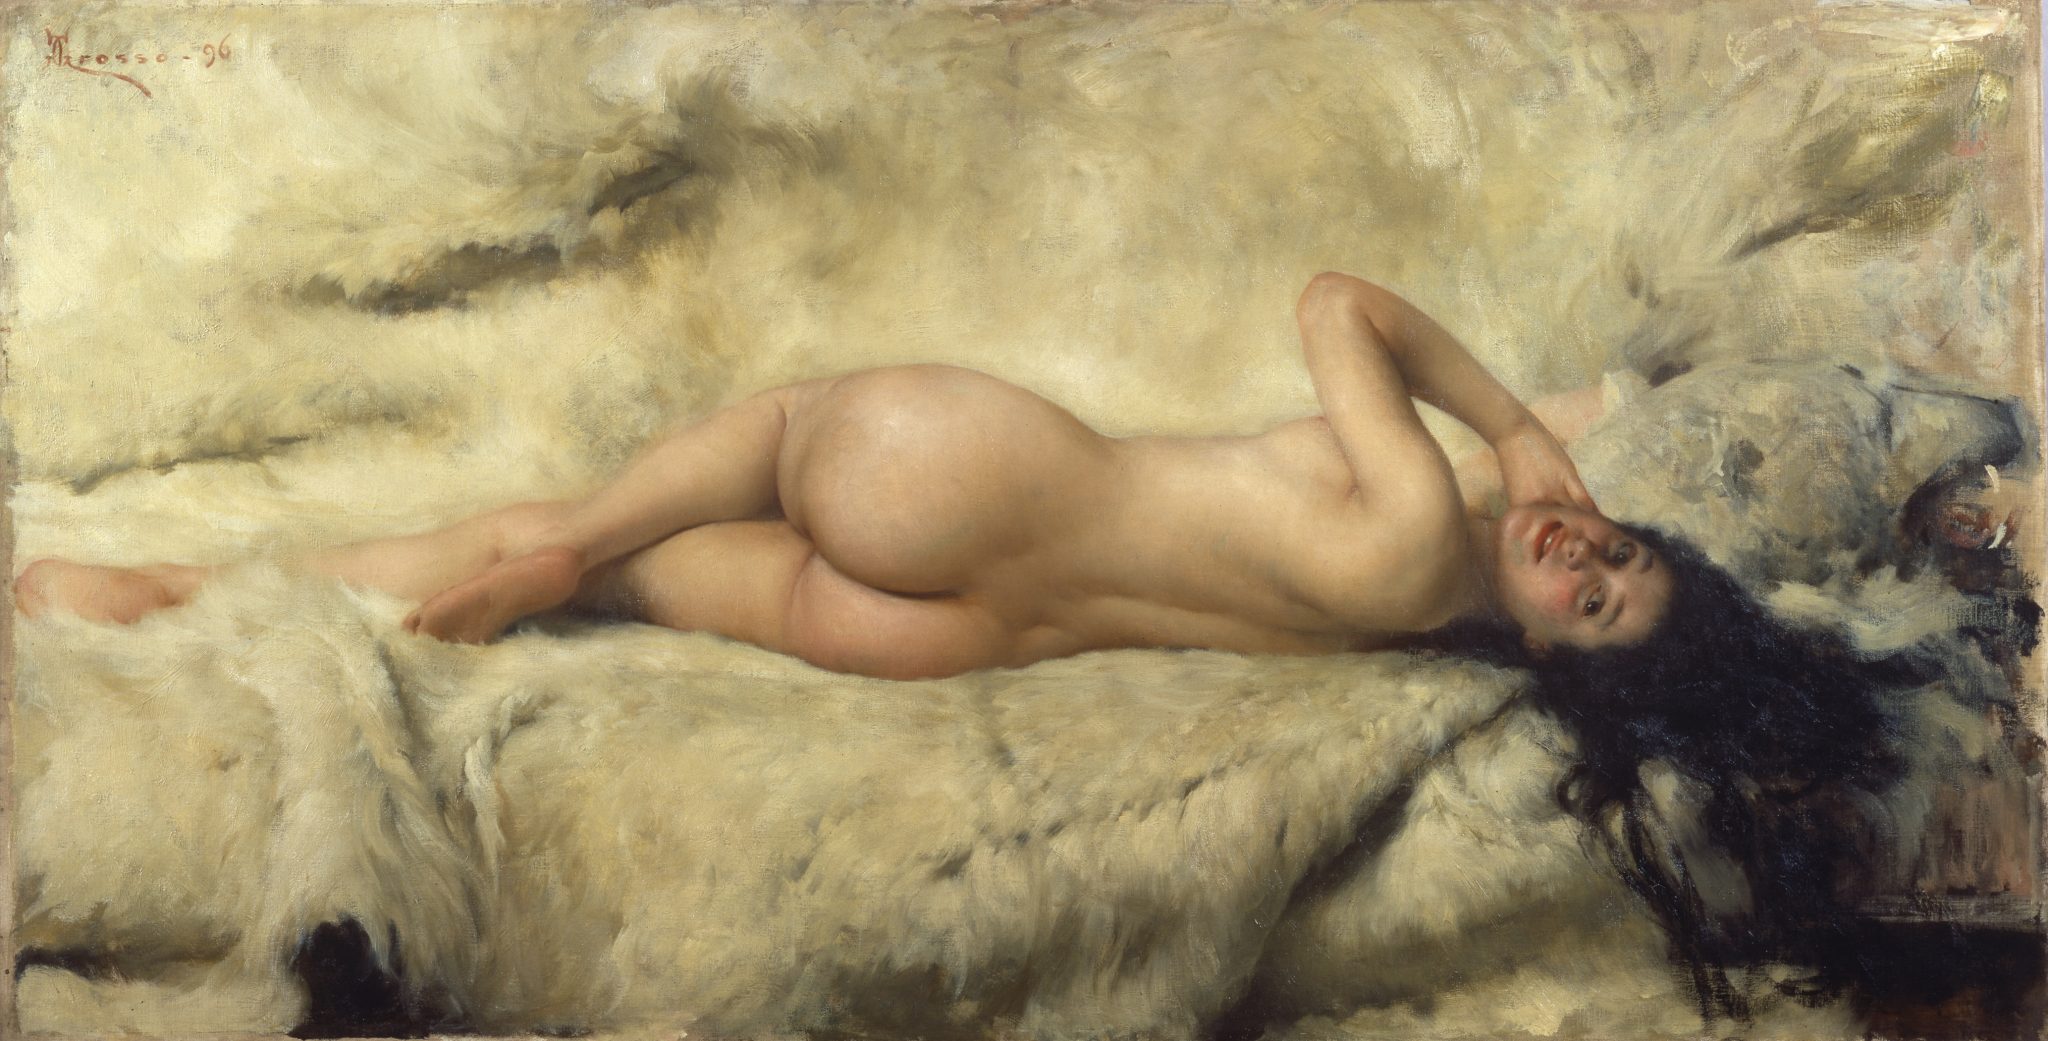 Giacomo GROSSO, La nuda (Nuda), 1896 Olio su tela, cm 105 x 205 GAM – Galleria Civica d’Arte Moderna e Contemporanea, Torino (inv. P/1148)